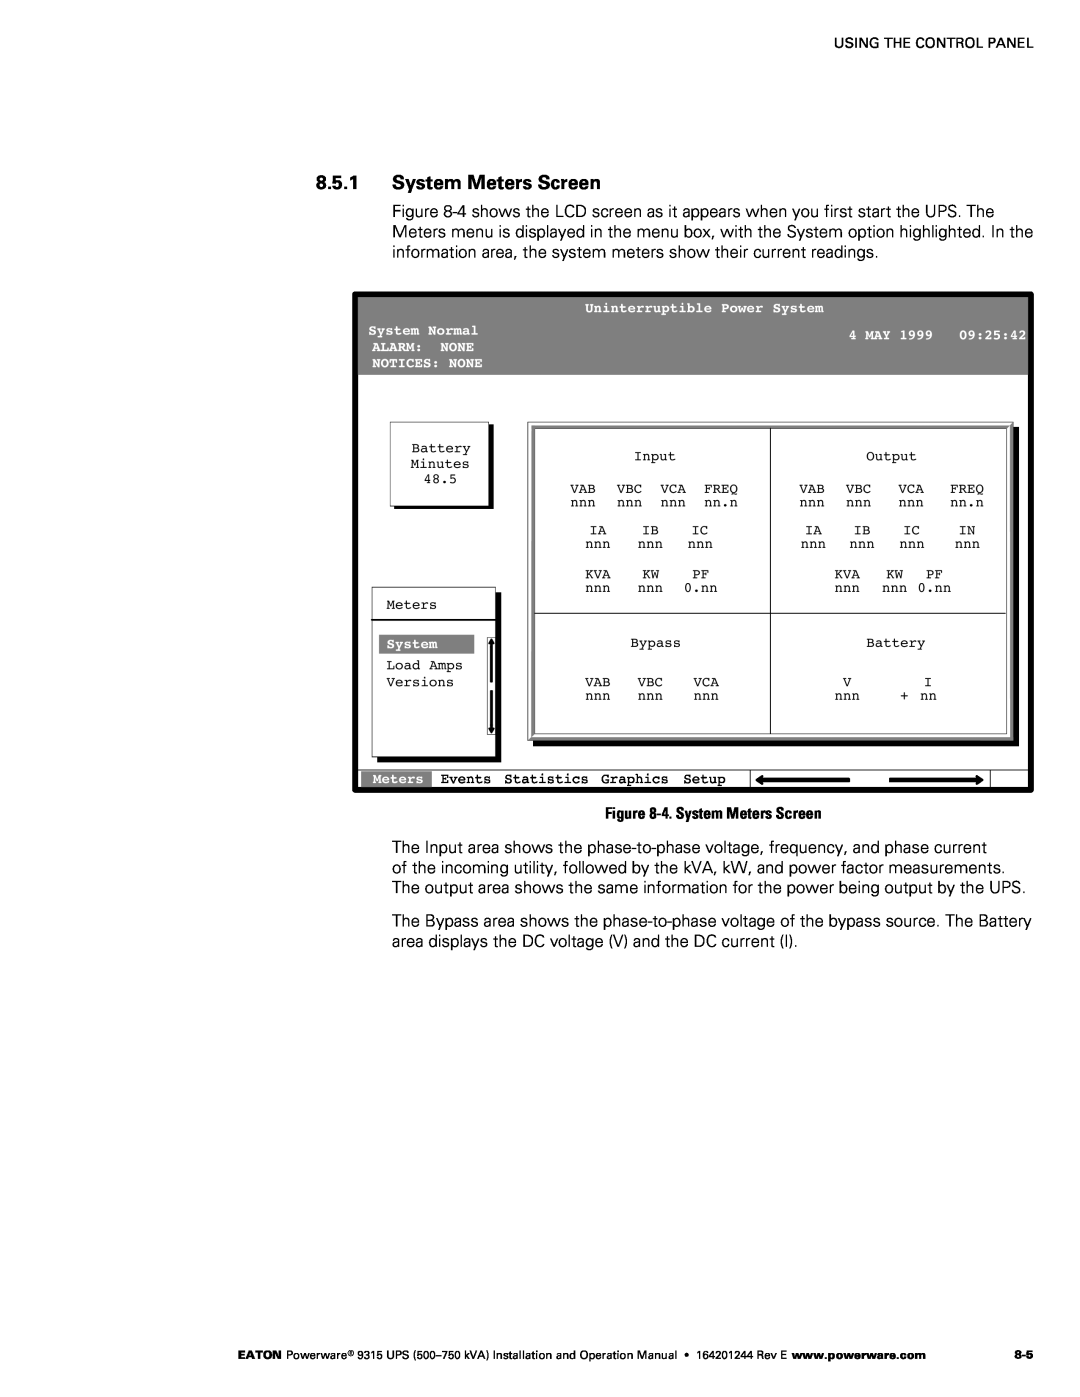 Powerware Powerware 9315 operation manual ‐4. System Meters Screen 